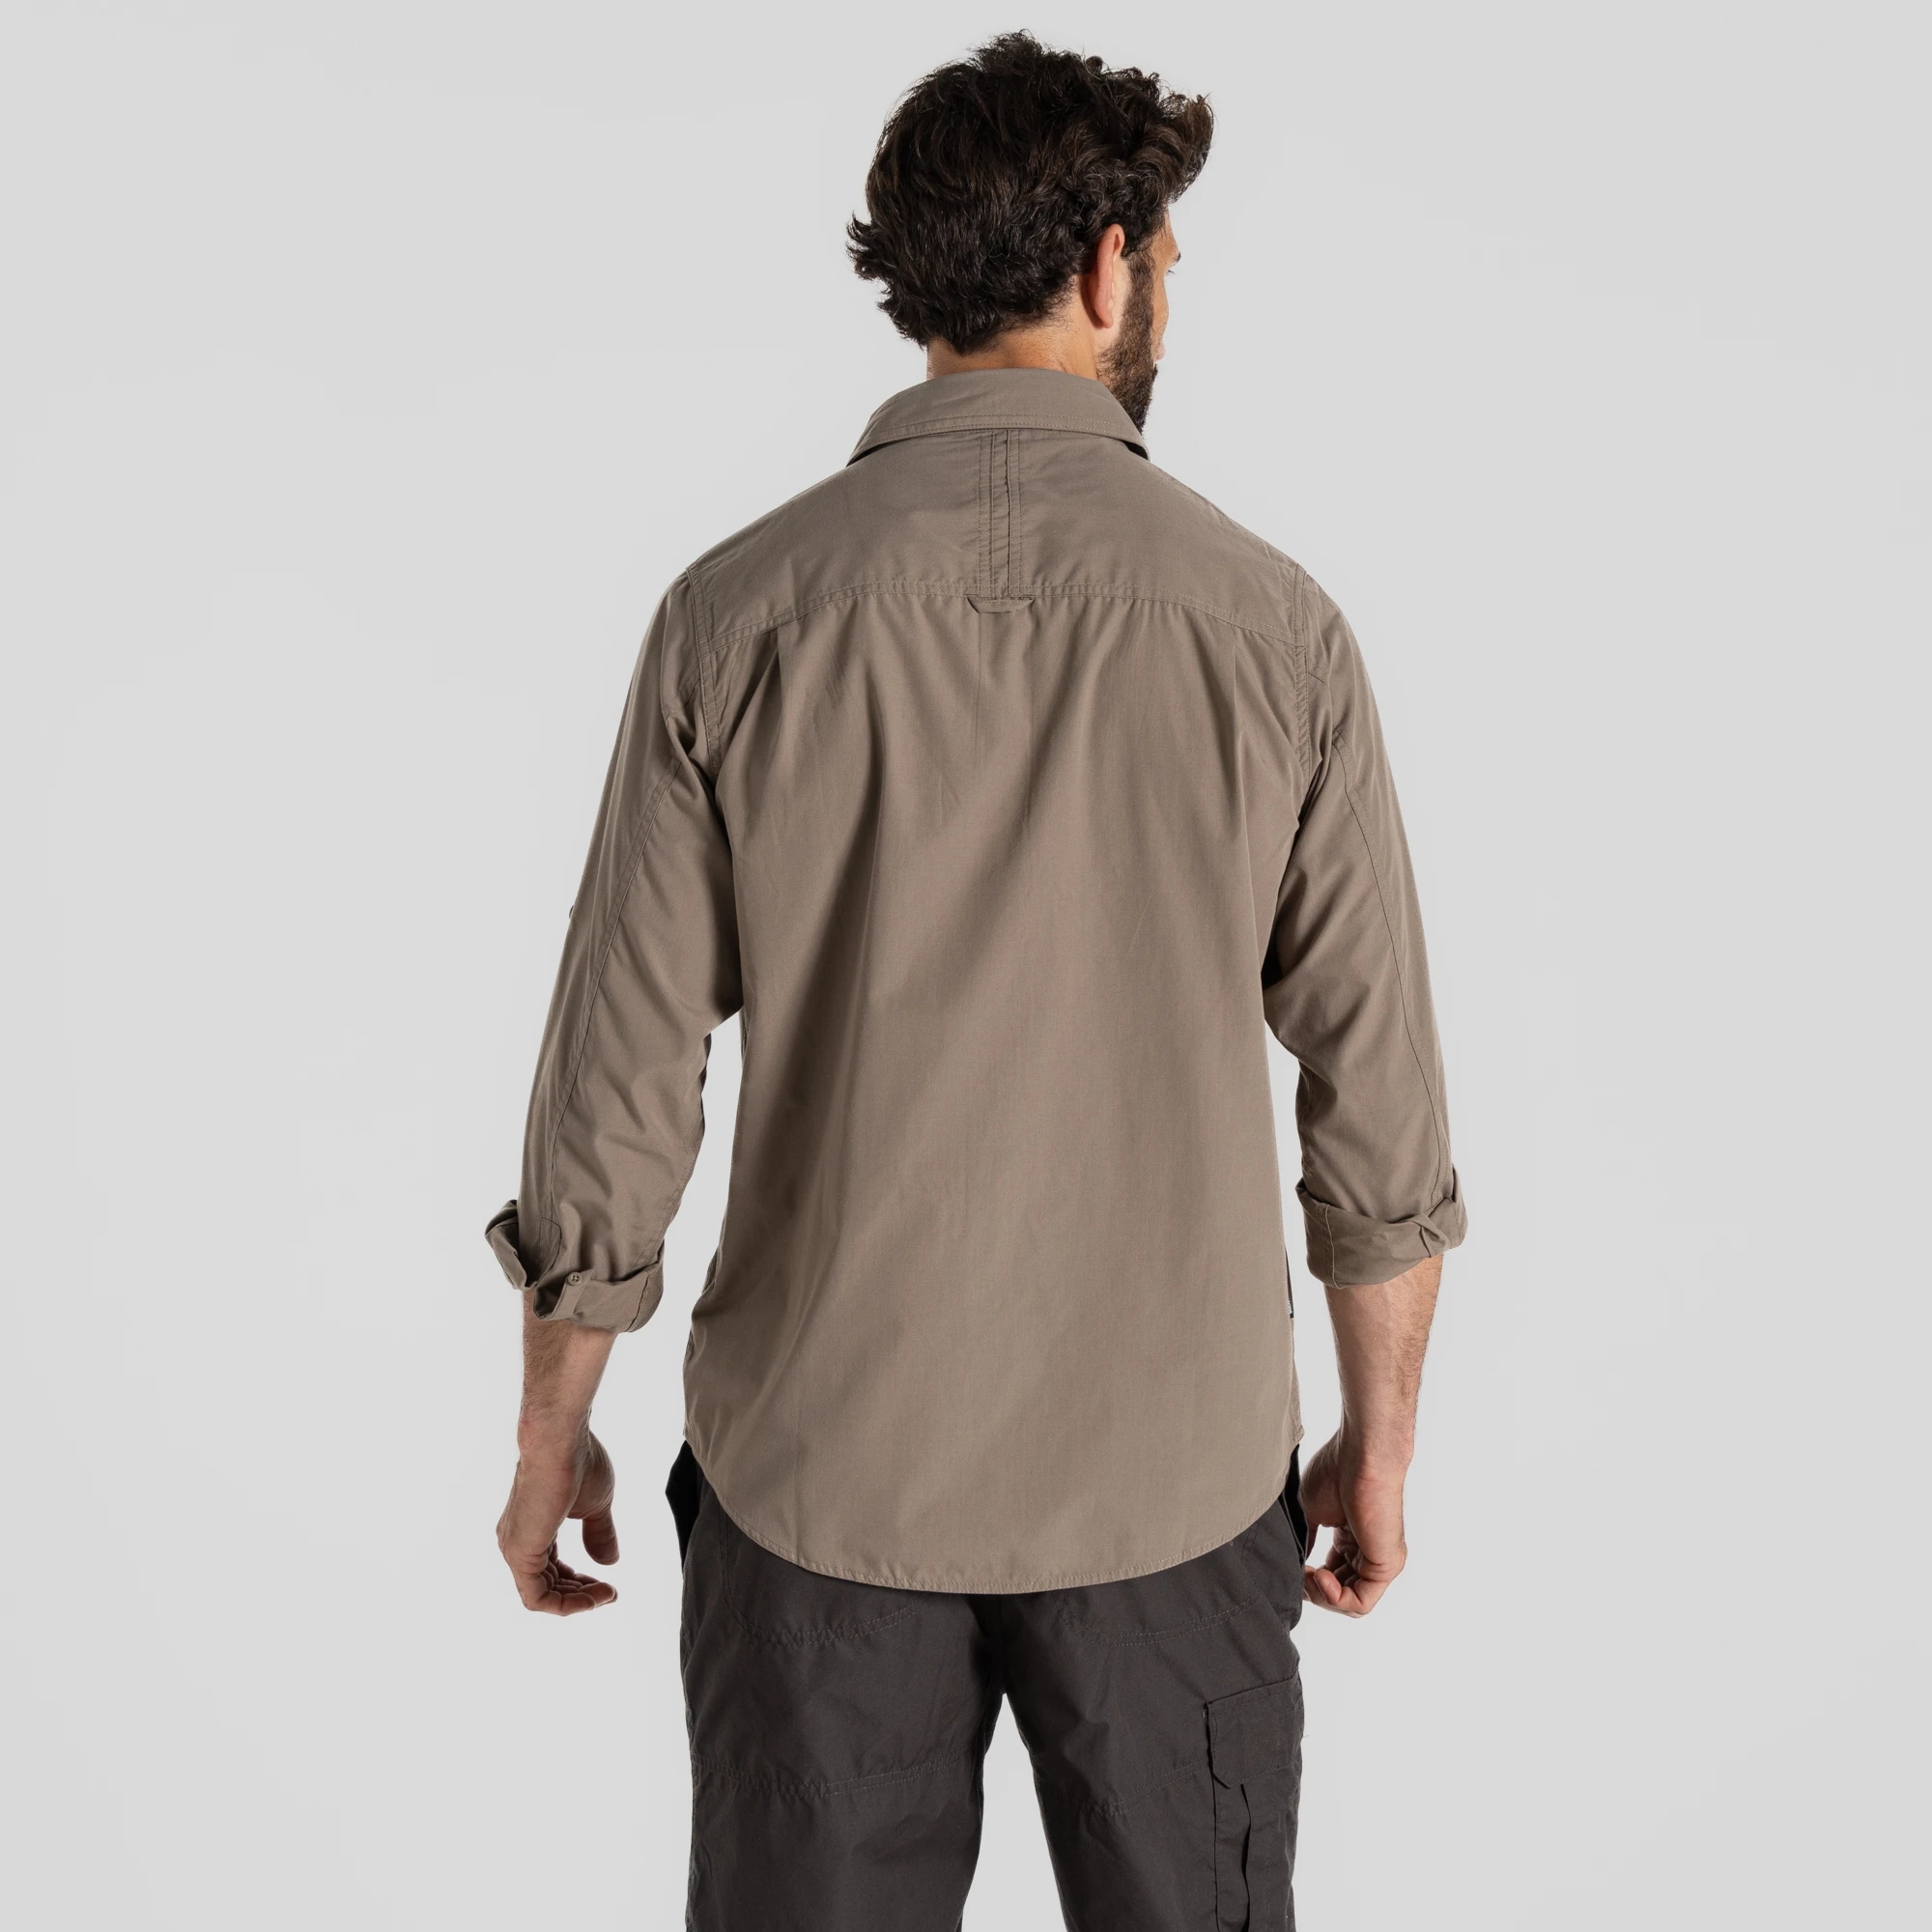 personalizar Logo alta calidad UPF50+ proteccion solar Resistente al desgarro Respirable Outdoor Camisas